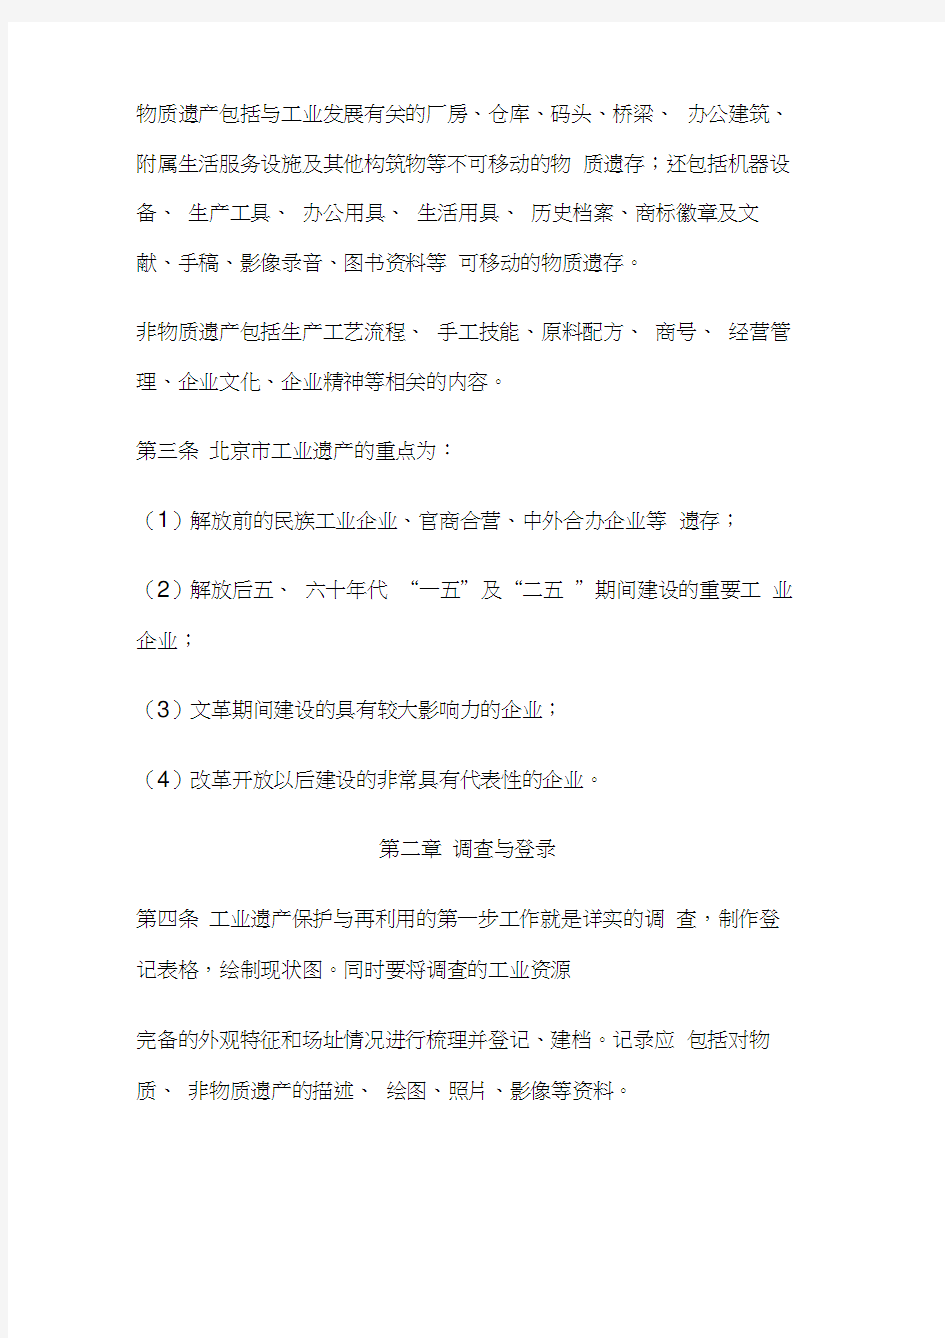 (完整版)北京市工业遗产保护与再利用工作导则2